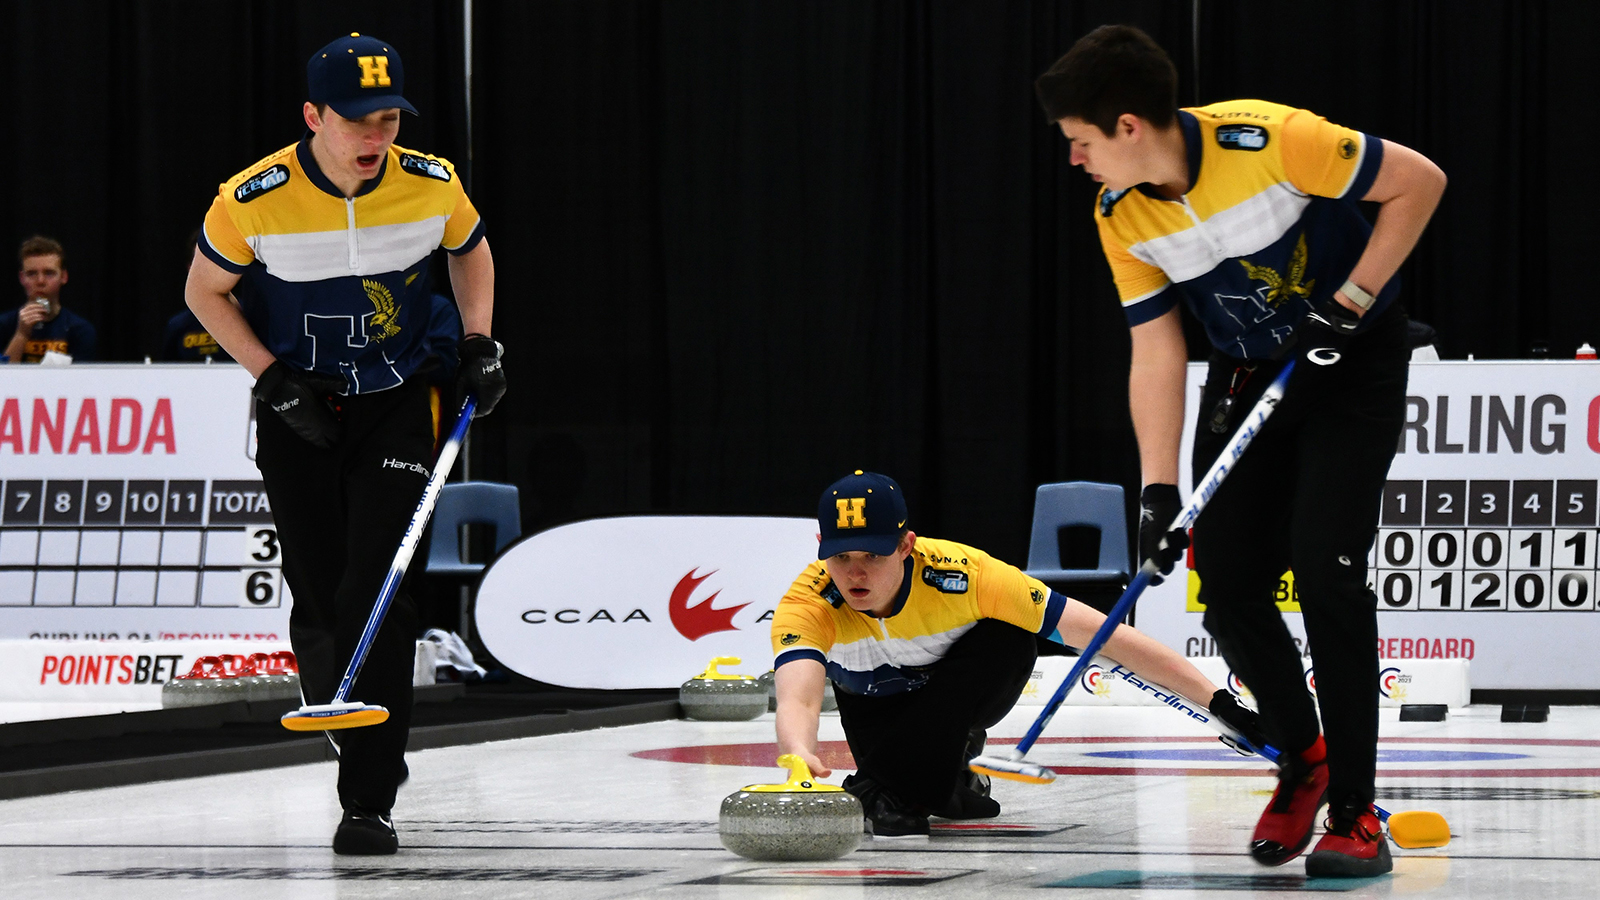 Les championnats de curling de l'ACSC commencent mardi à Fredericton